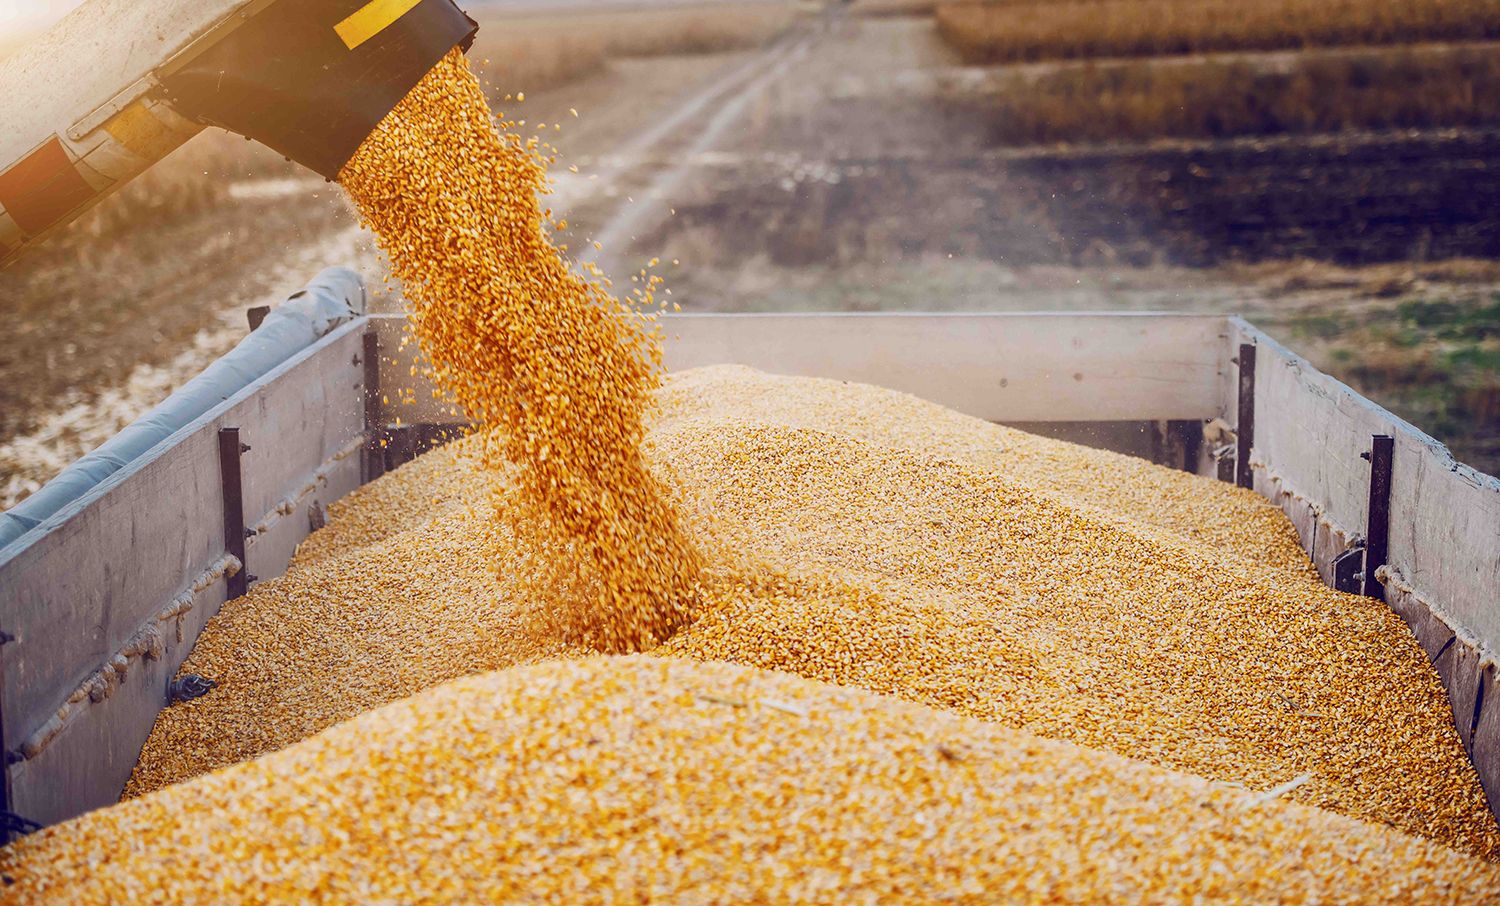 Регионы активно повышают стоимость на пшеницу. Где дороже всего? – Парагро